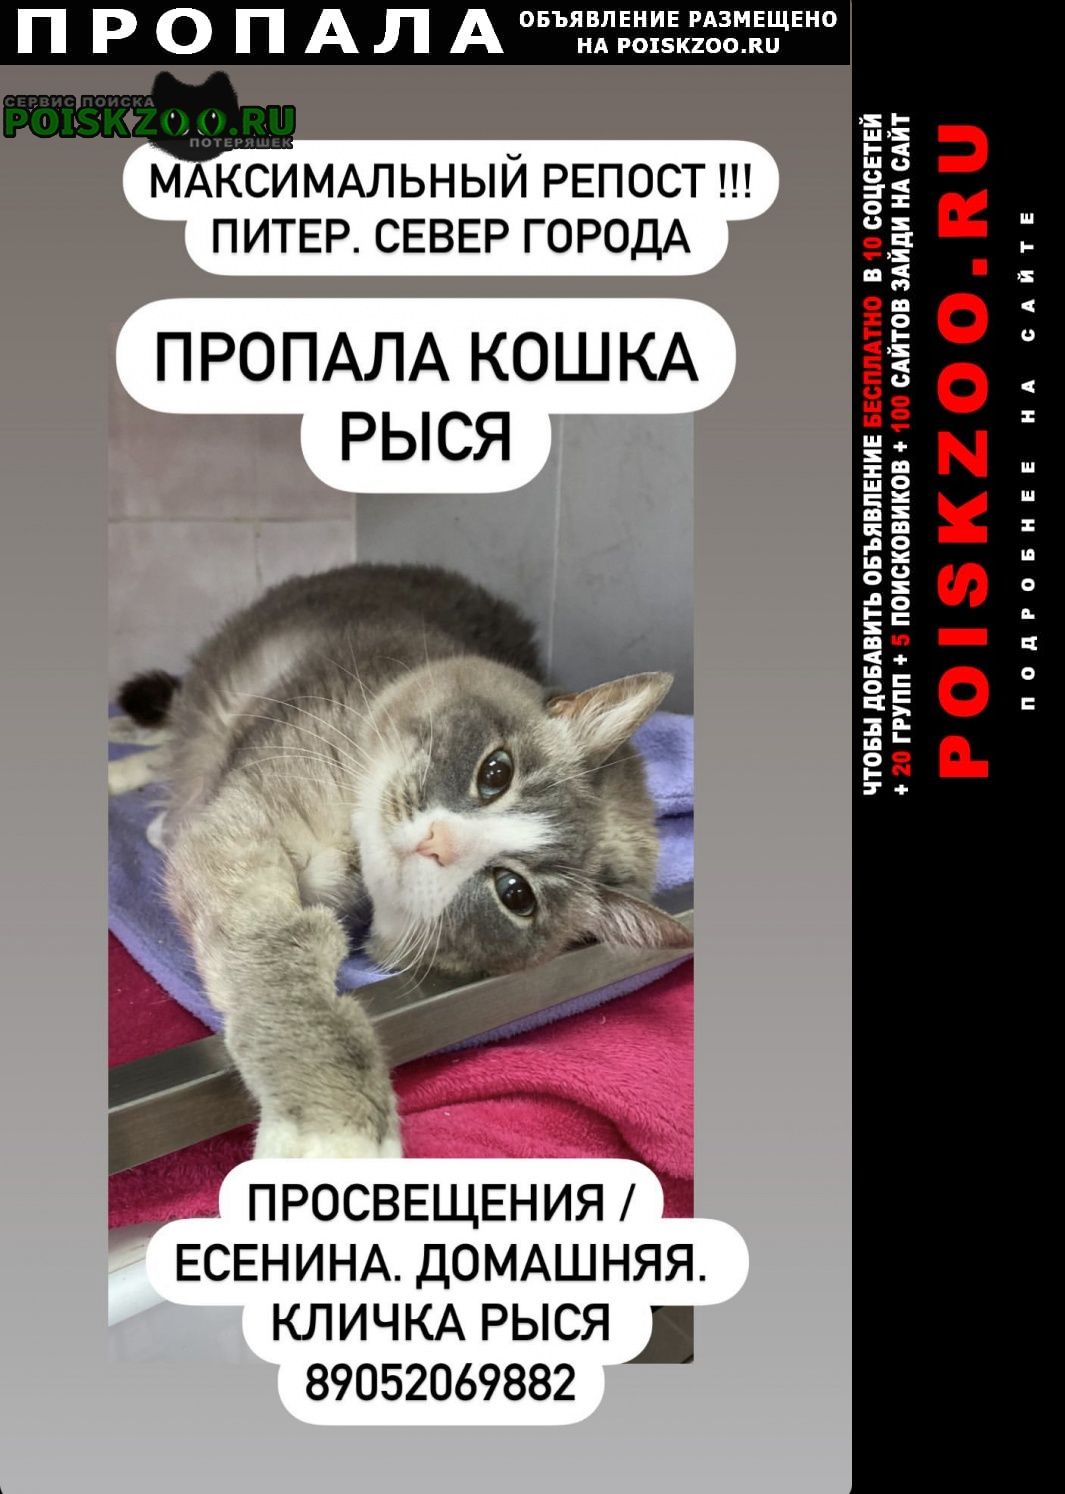 Санкт-Петербург Пропала кошка рыся. вознаграждение